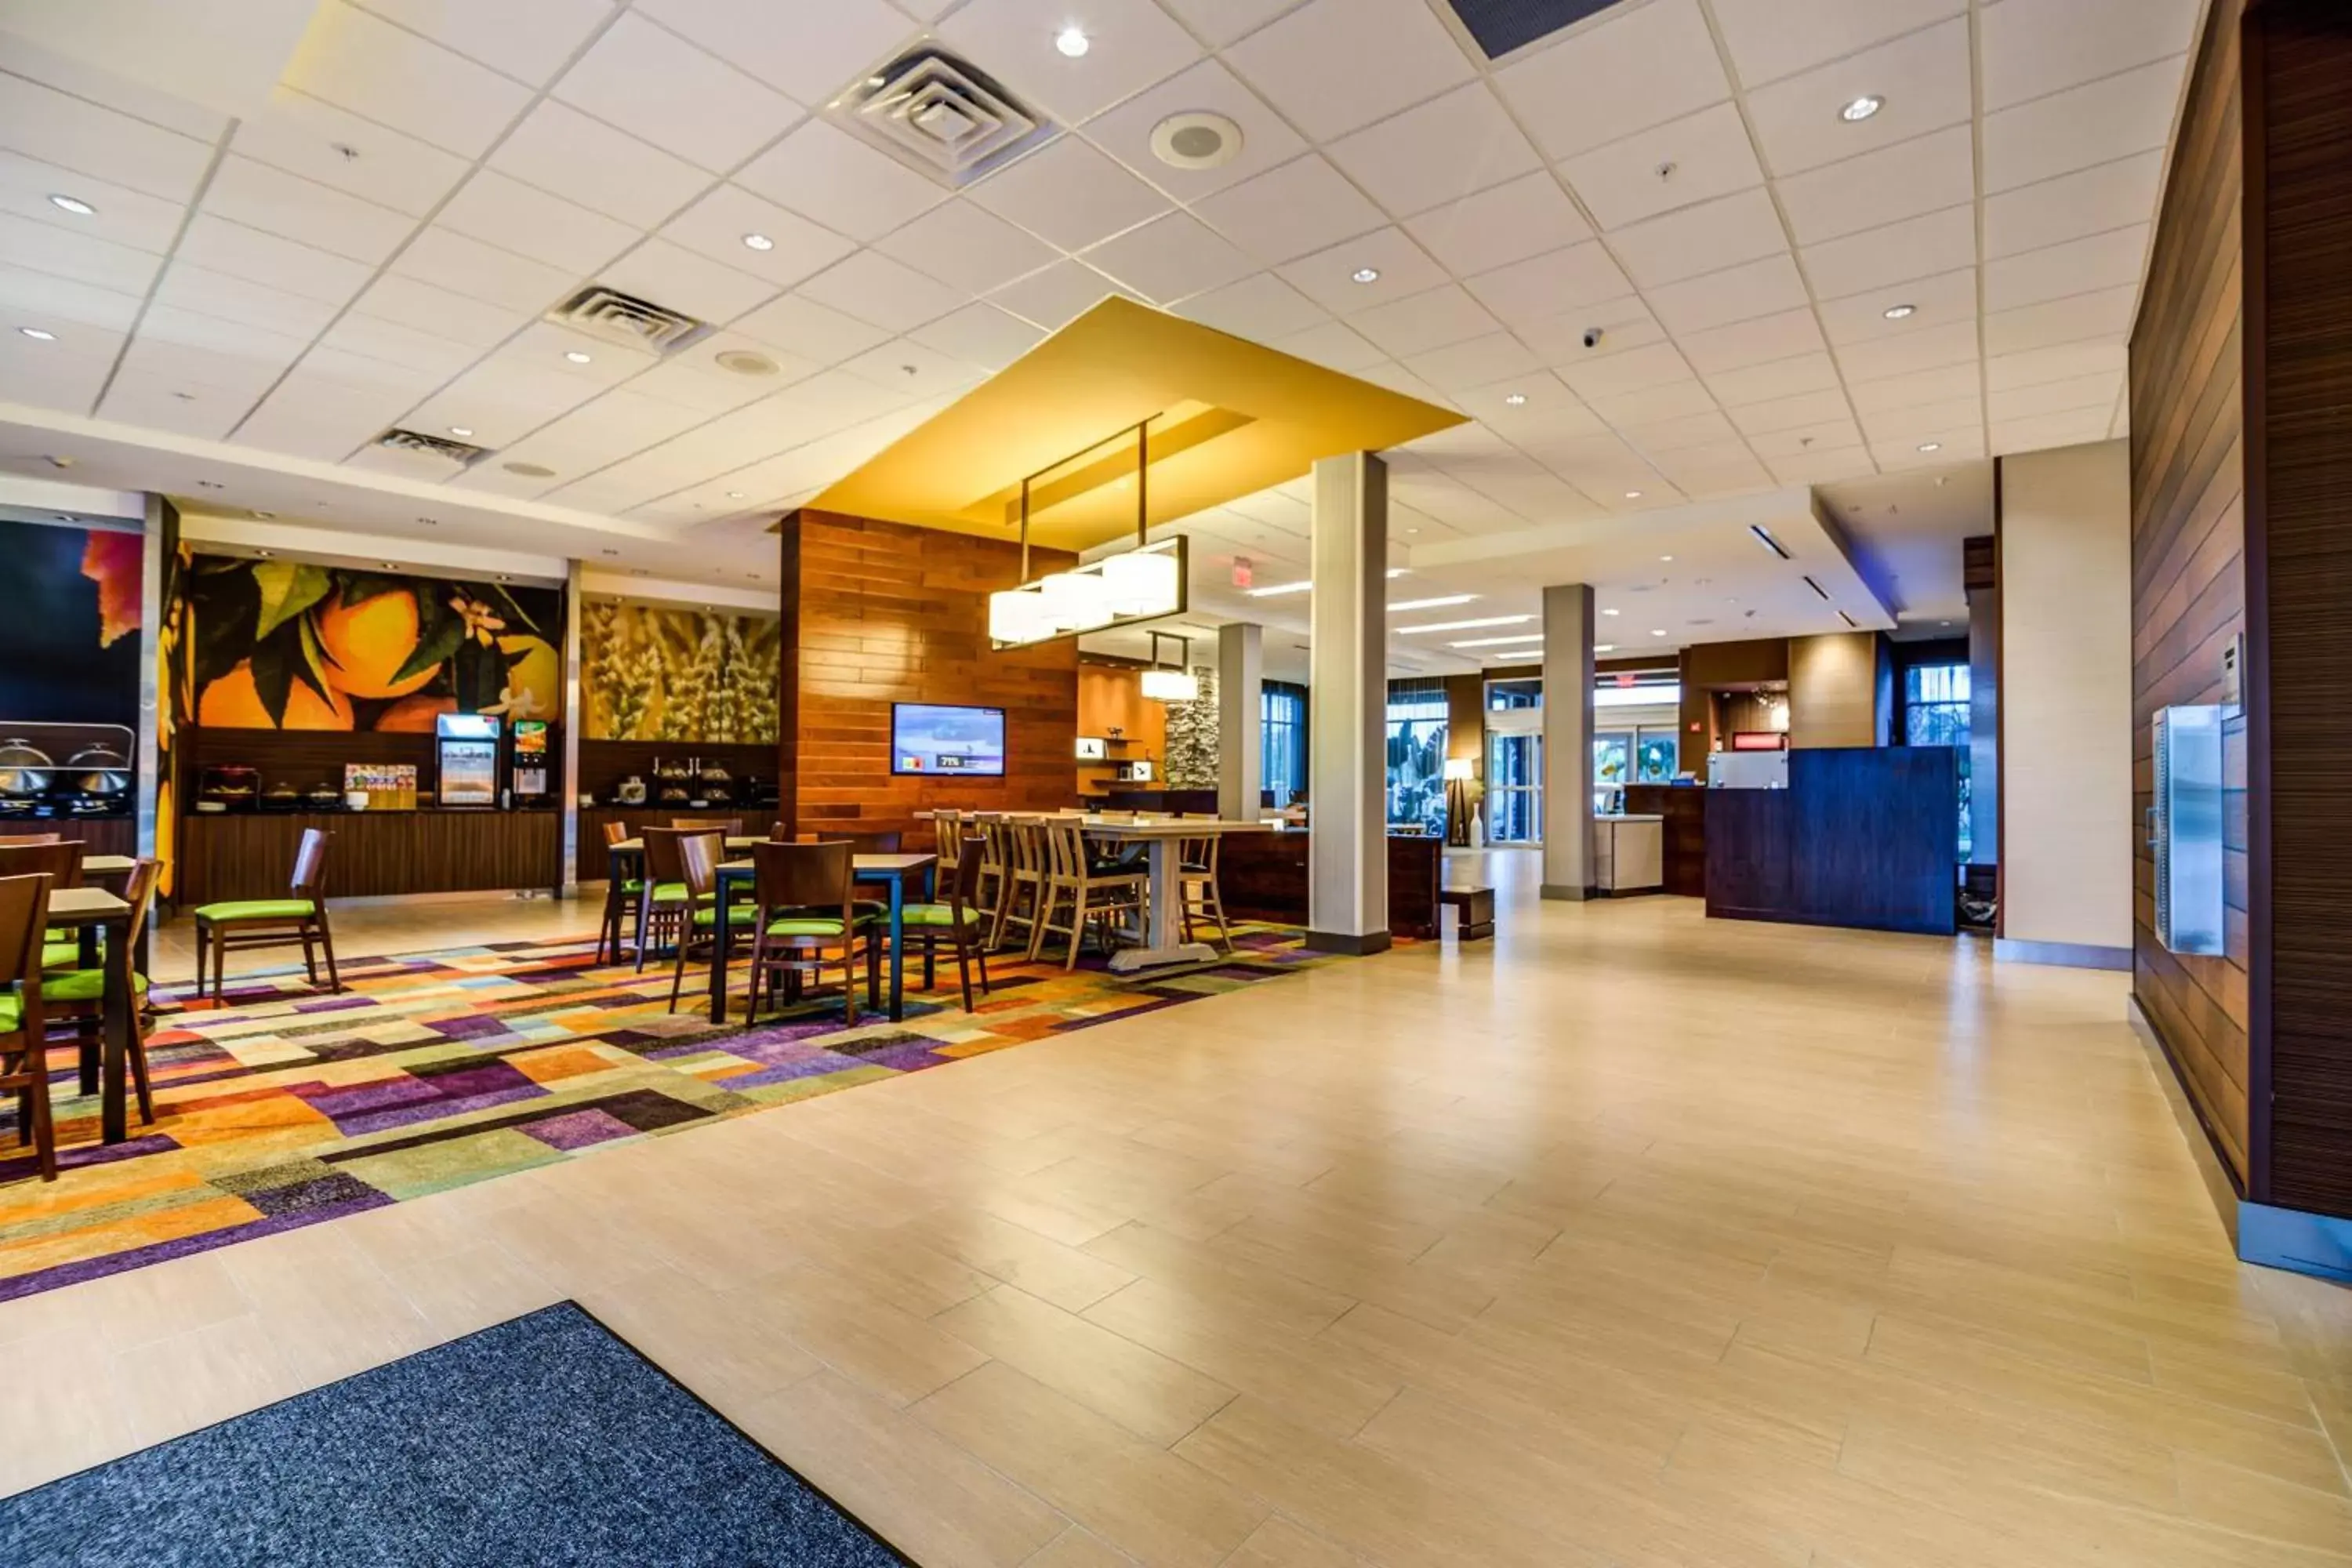 Lobby or reception, Lobby/Reception in Fairfield Inn & Suites by Marriott Delray Beach I-95